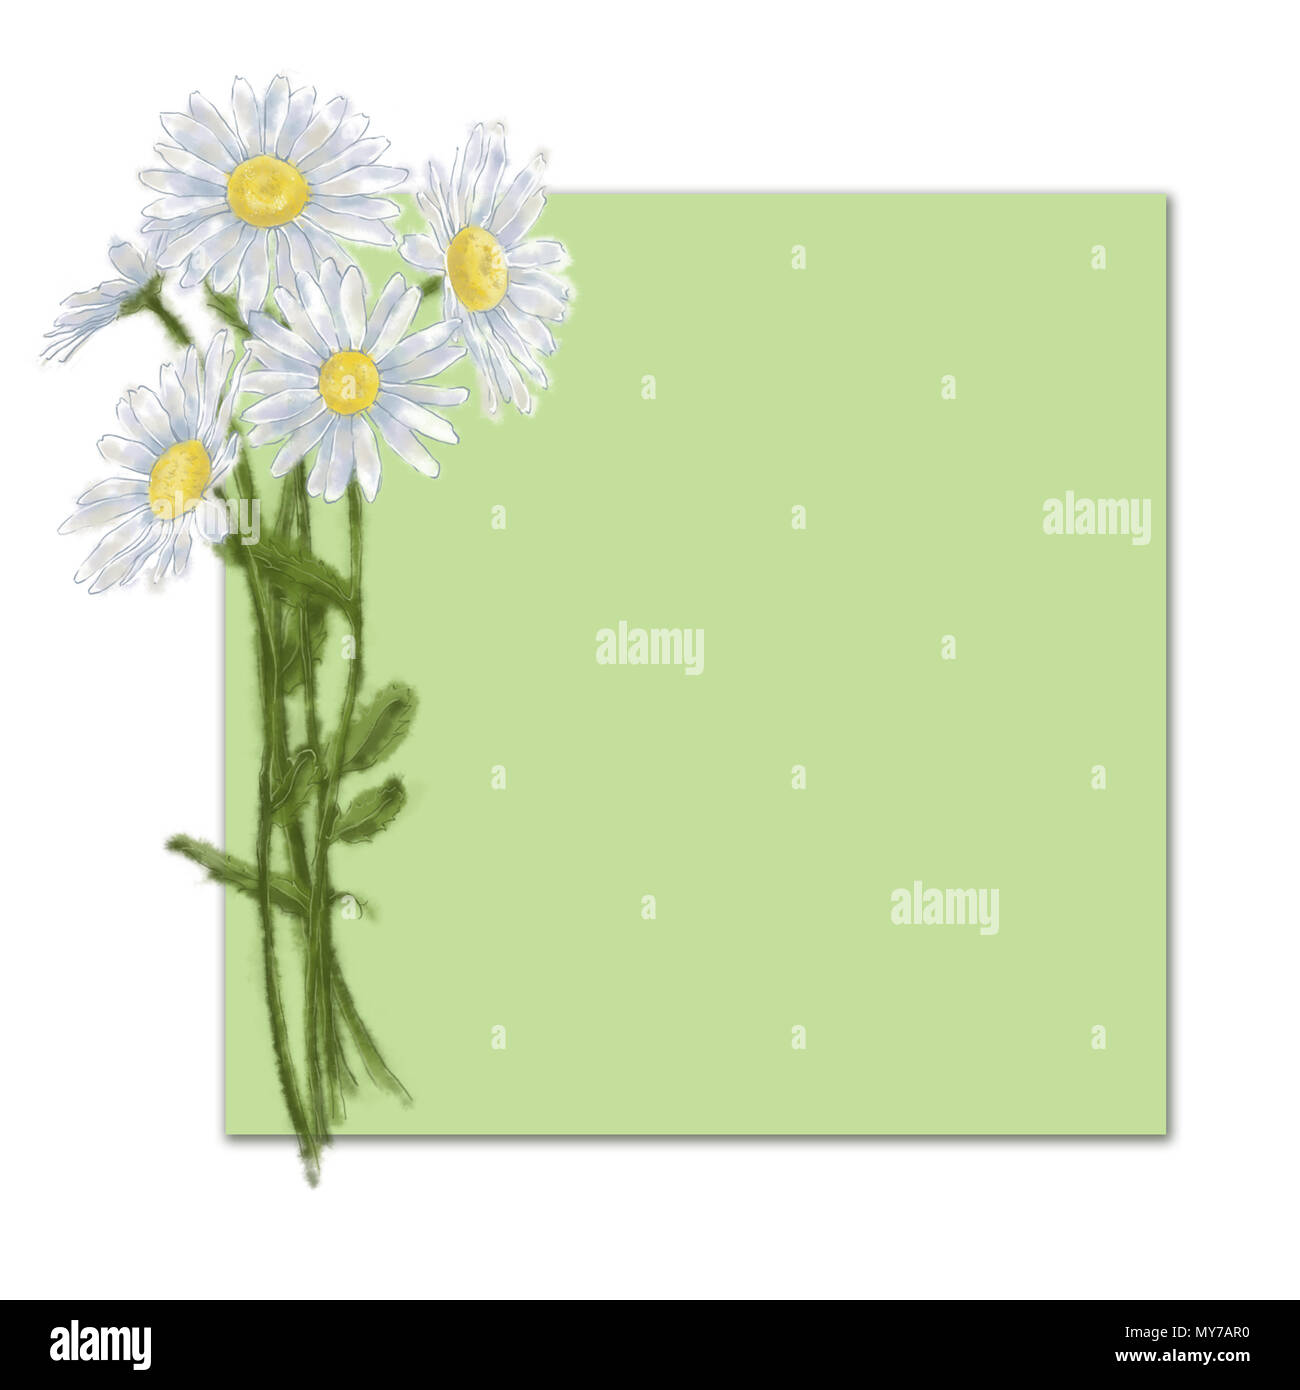 Daisy Blumenstrauß Vorlage mit Text Raum isoliert auf Grün. Land Blume Karte für Print, Durchsage, Grußkarte, Werbung etc. Stockfoto